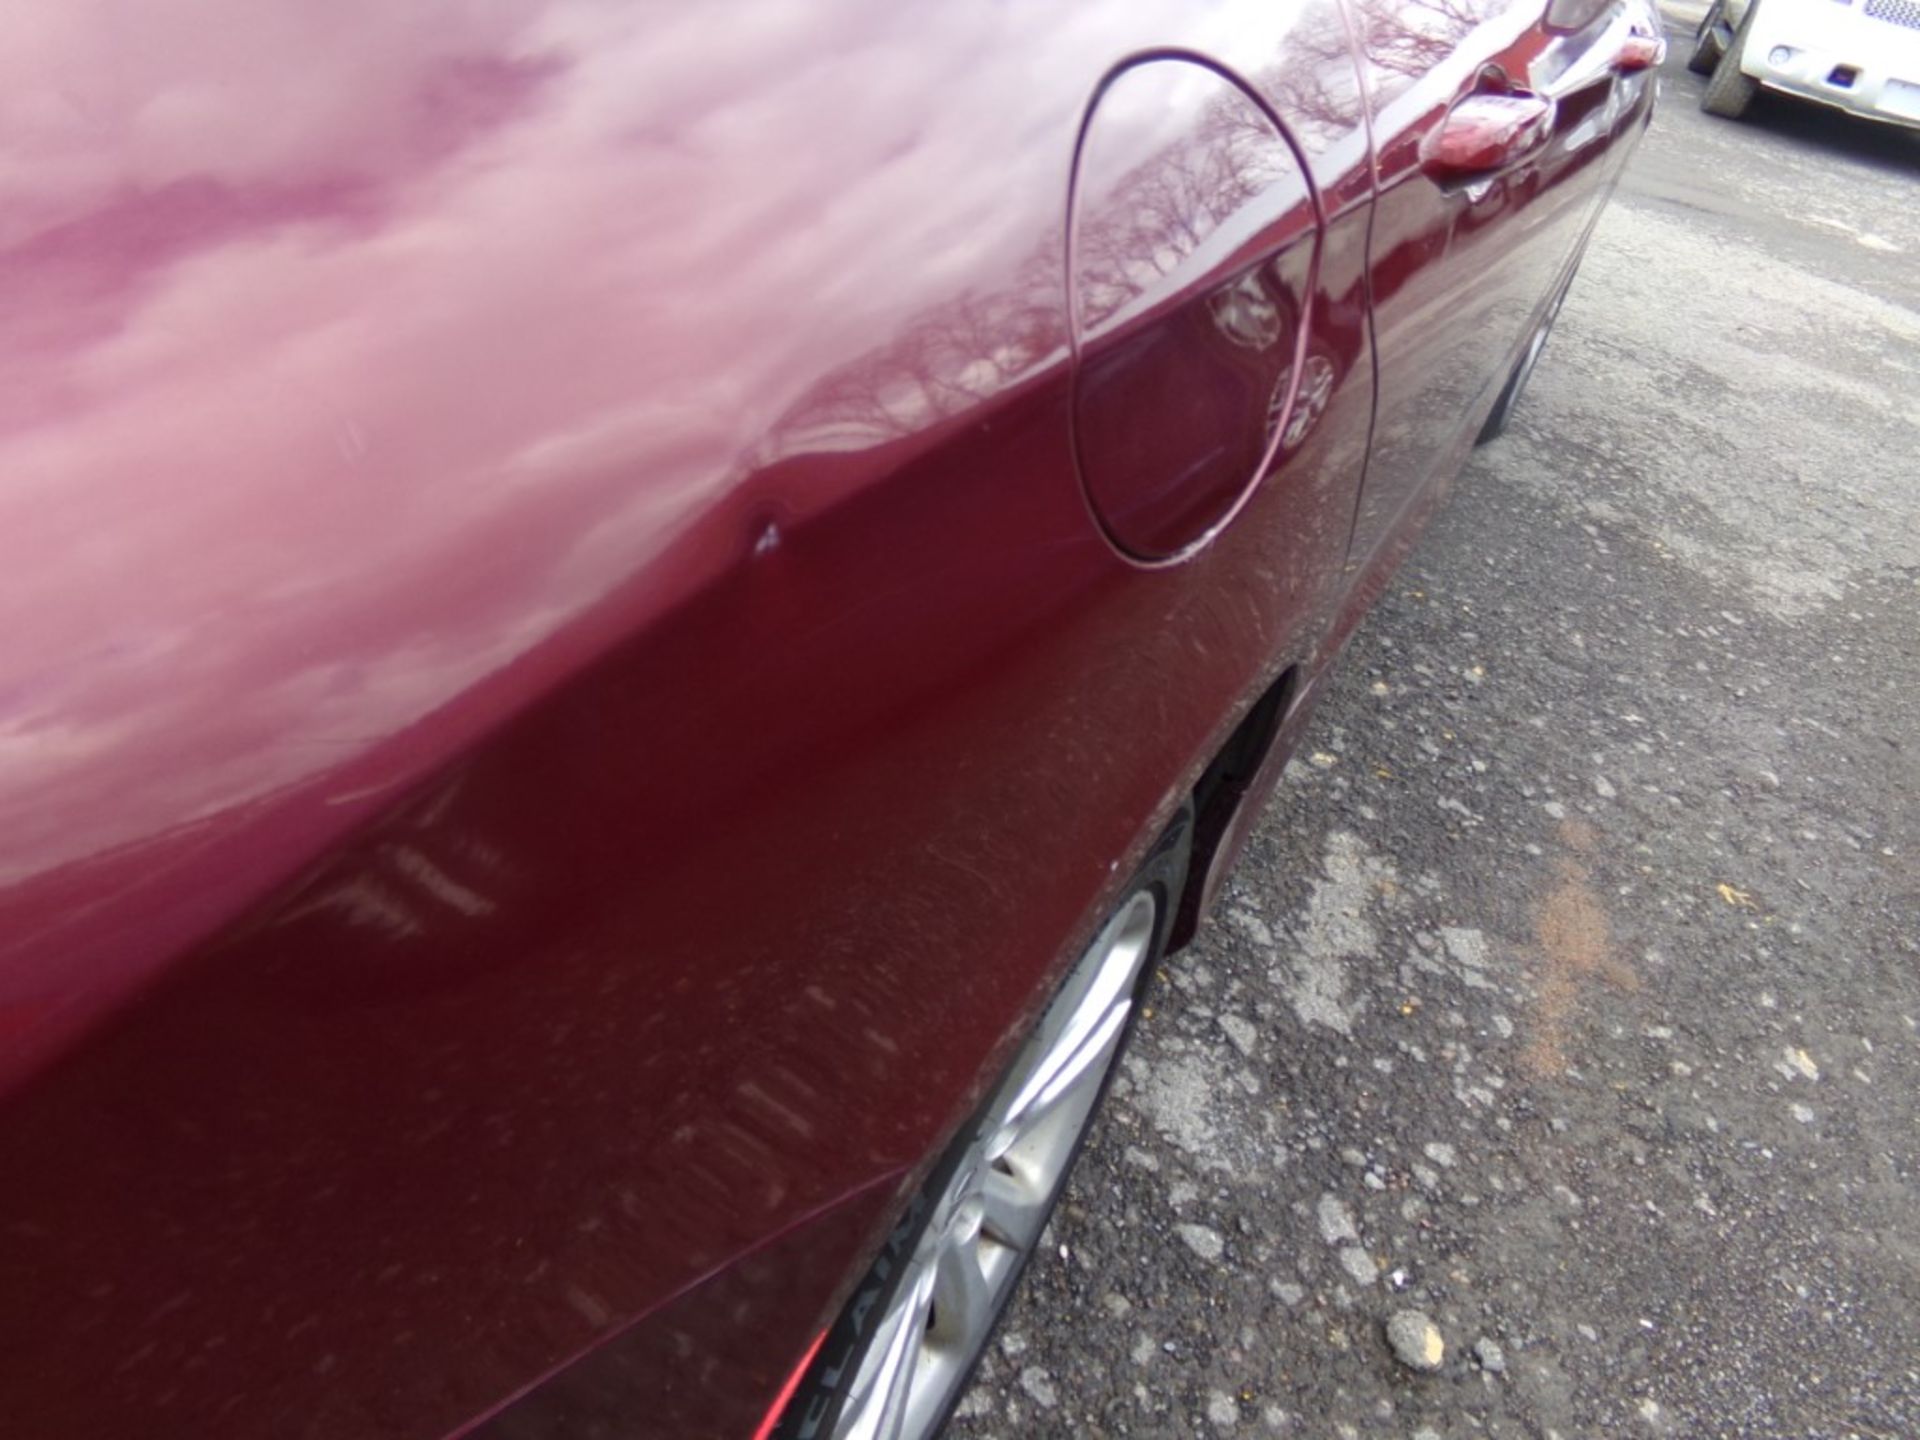 2015 Chrysler 200 Limited, Maroon, 137,543 Miles, VIN# 1C3CCCAB0FN591551, FRONT BUMPER COVER HAS - Bild 7 aus 8